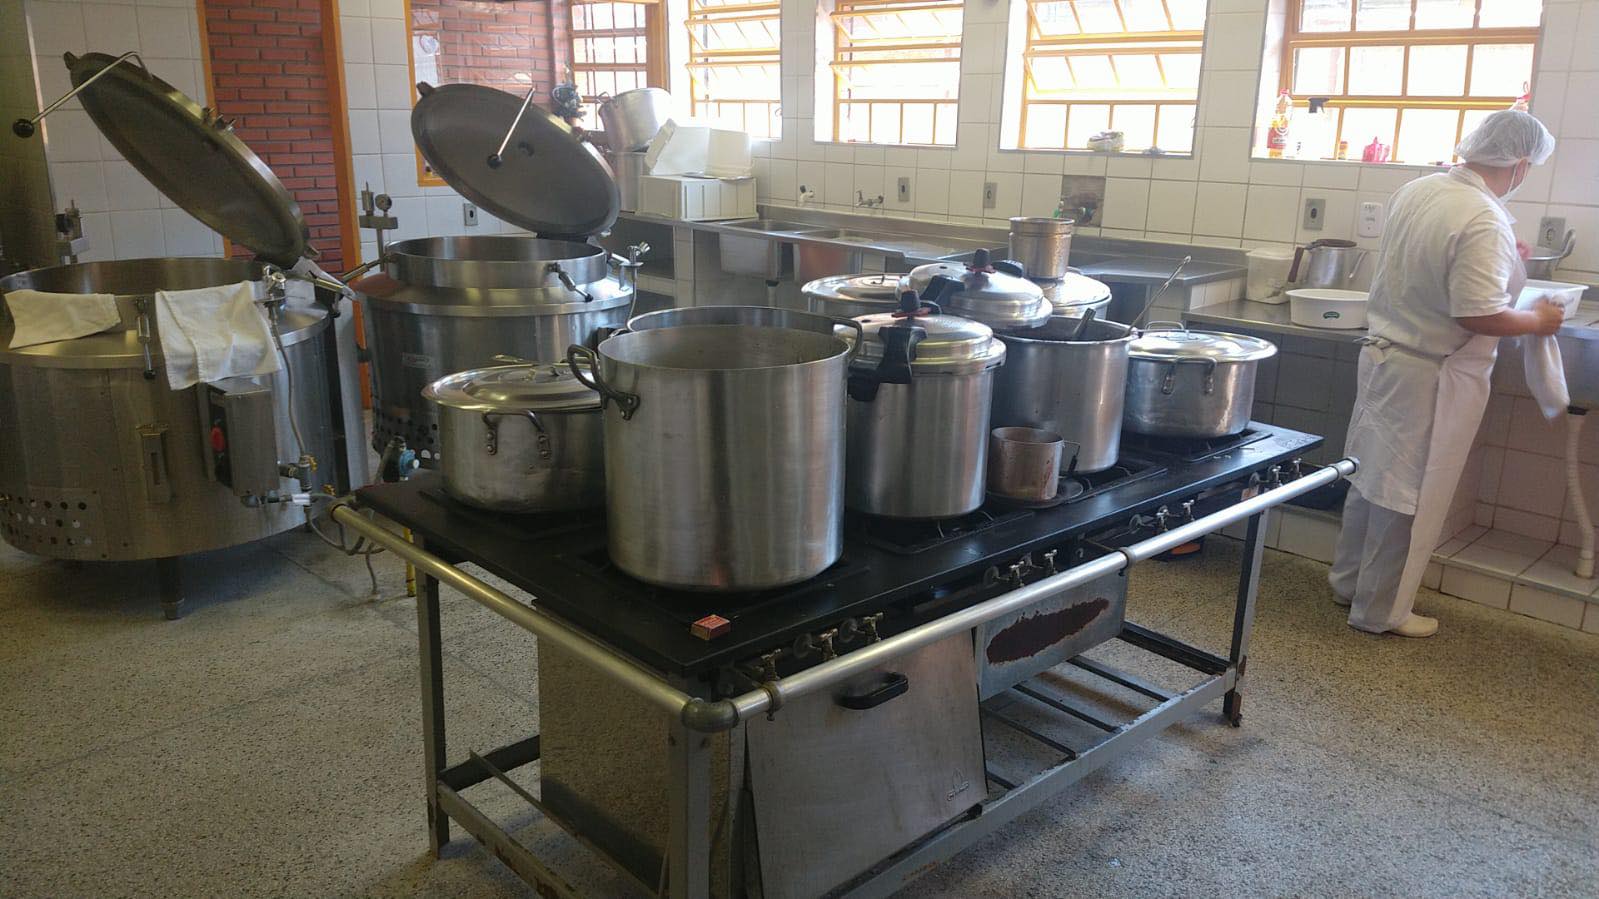 Cozinha e refeitório da Emef Porto Novo: 570 alunos com idade entre quatro anos a 17 anos ficaram sem alimentação durante uma semana